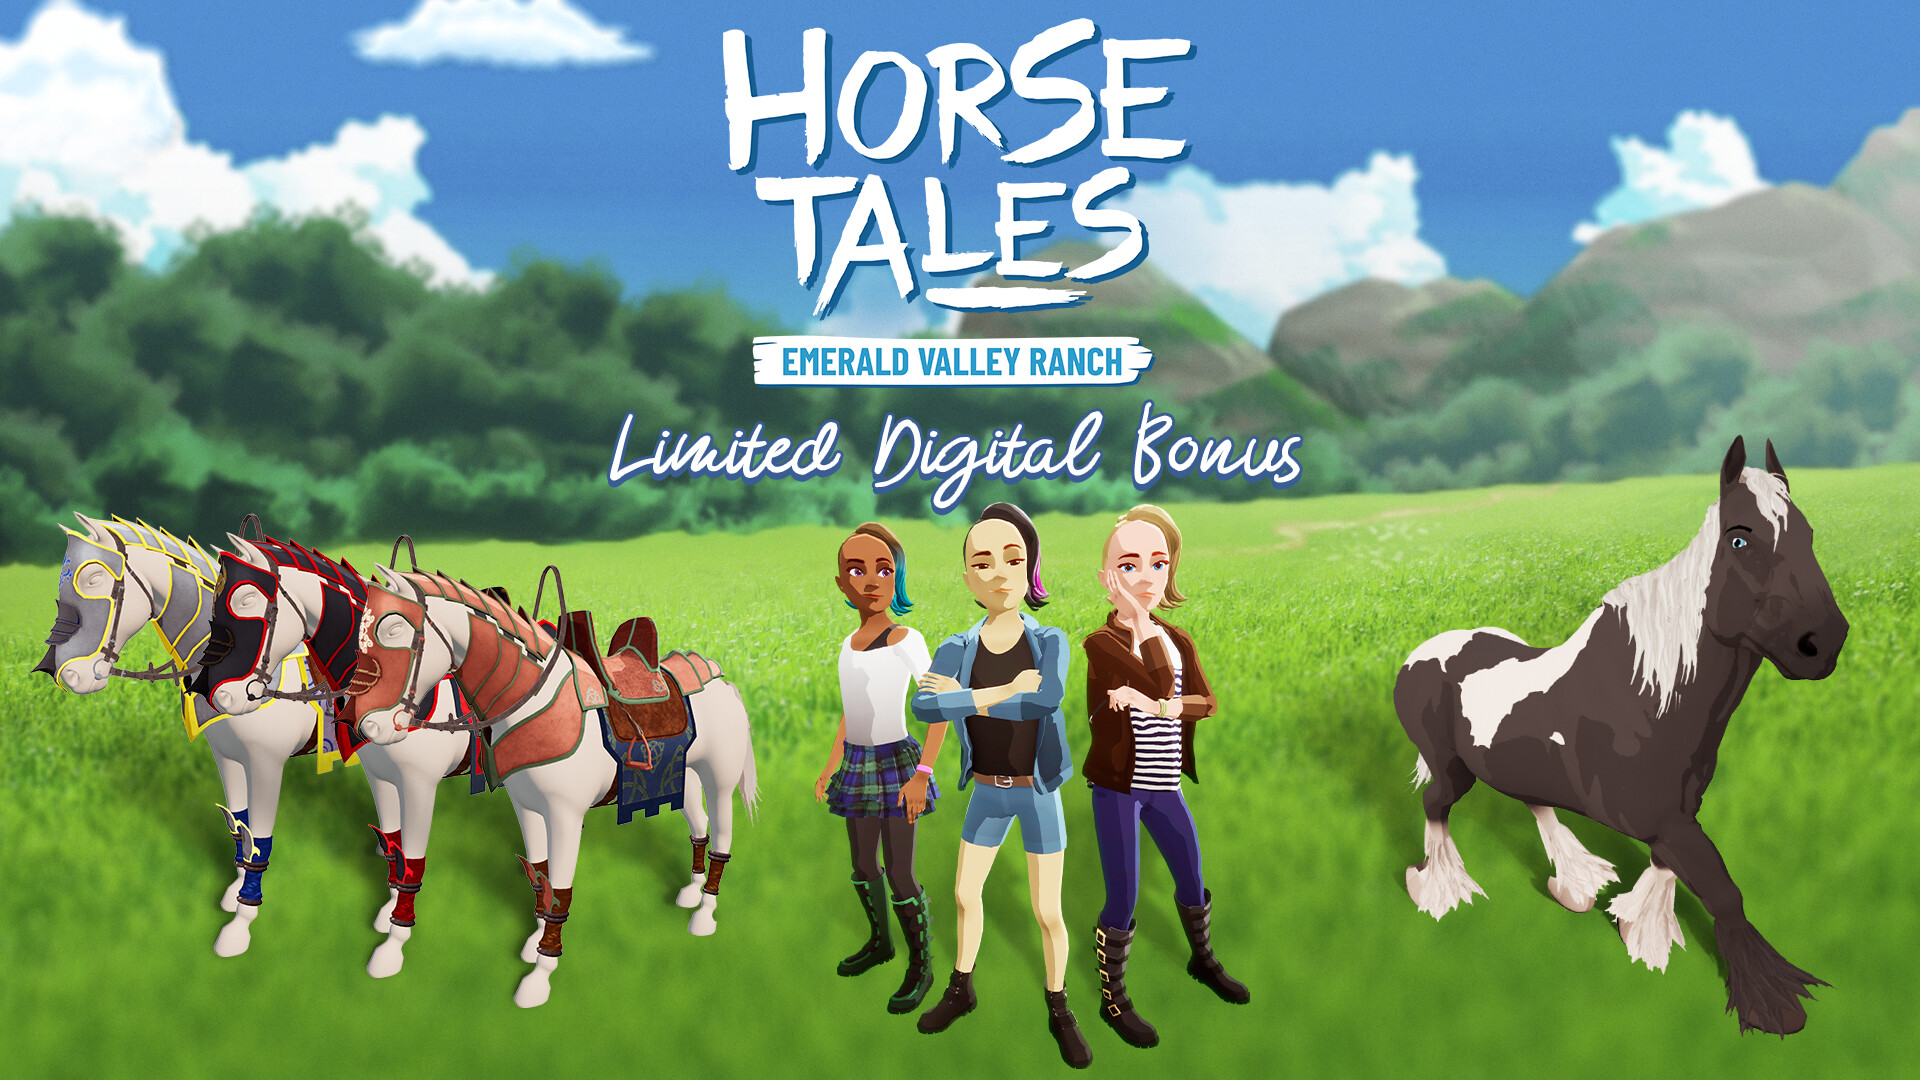 Horse Tales: Emerald Valley Ranch - Limited Digital Bonus DLC EU PS4 CD Key 3.38$